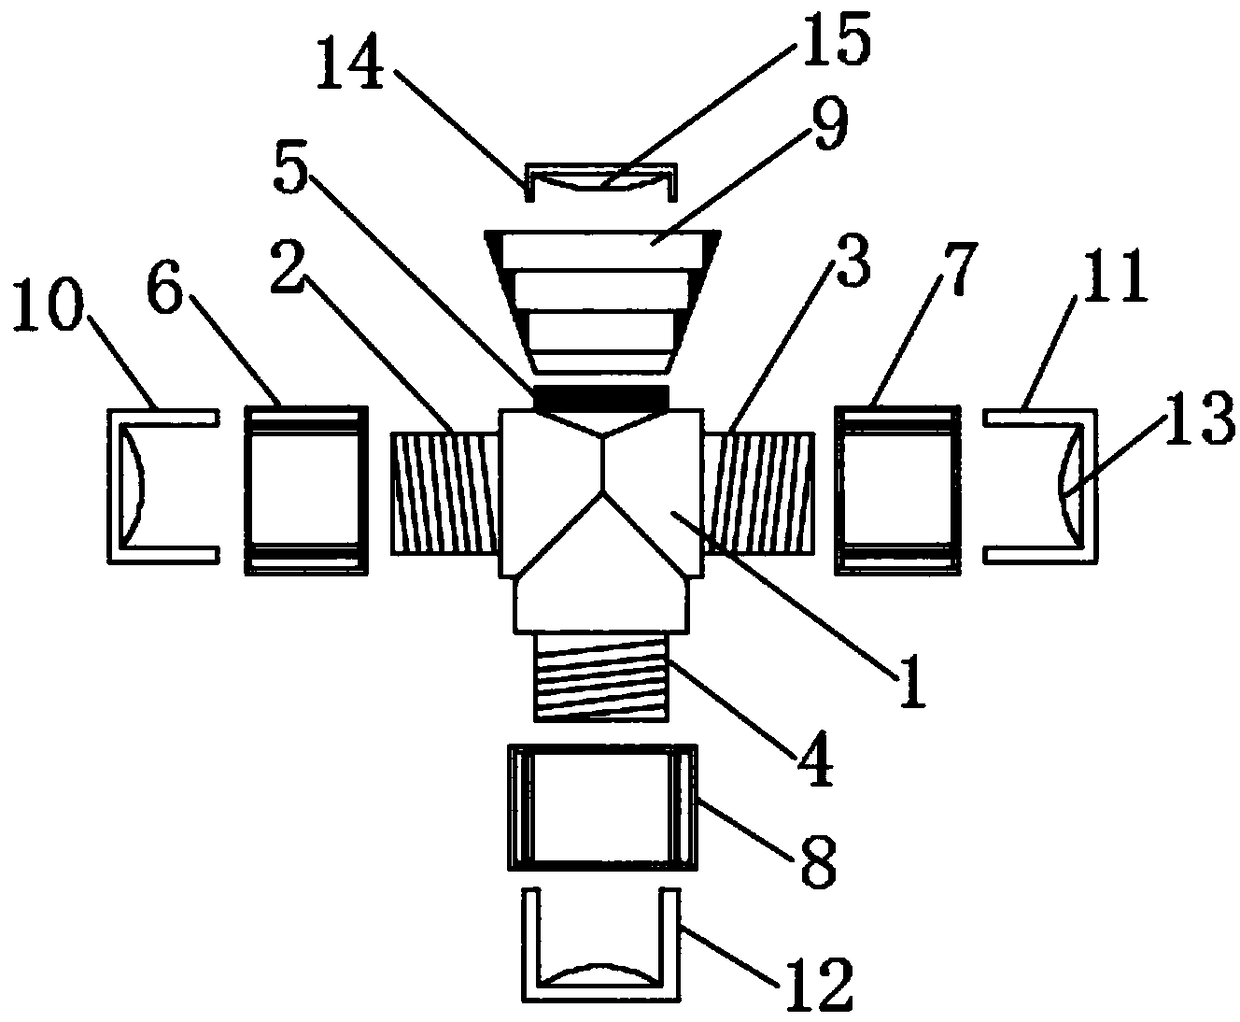 Three-way hydraulic joint